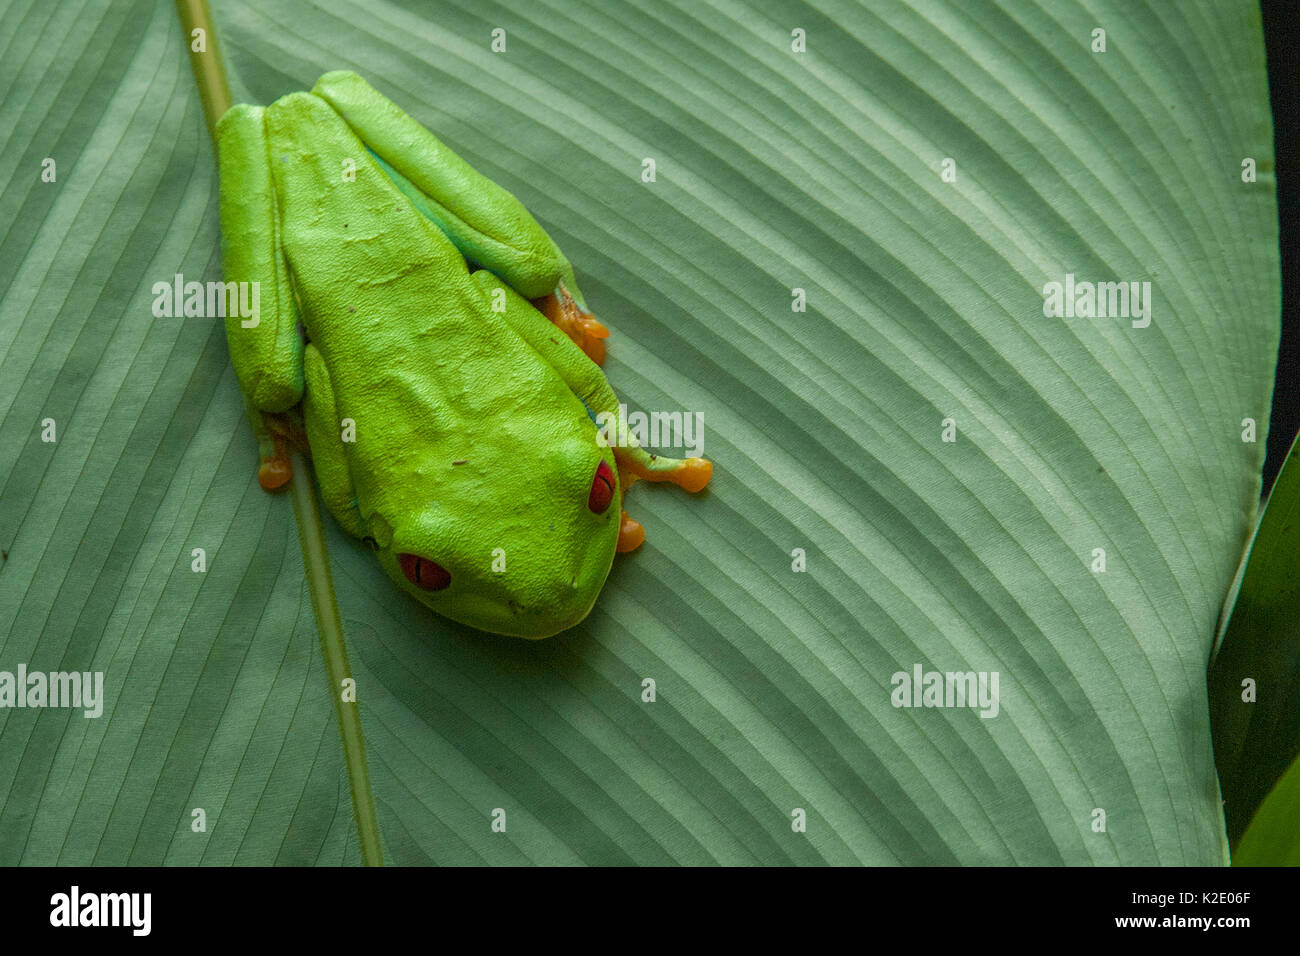 Leaf frog on Leaf Stock Photo